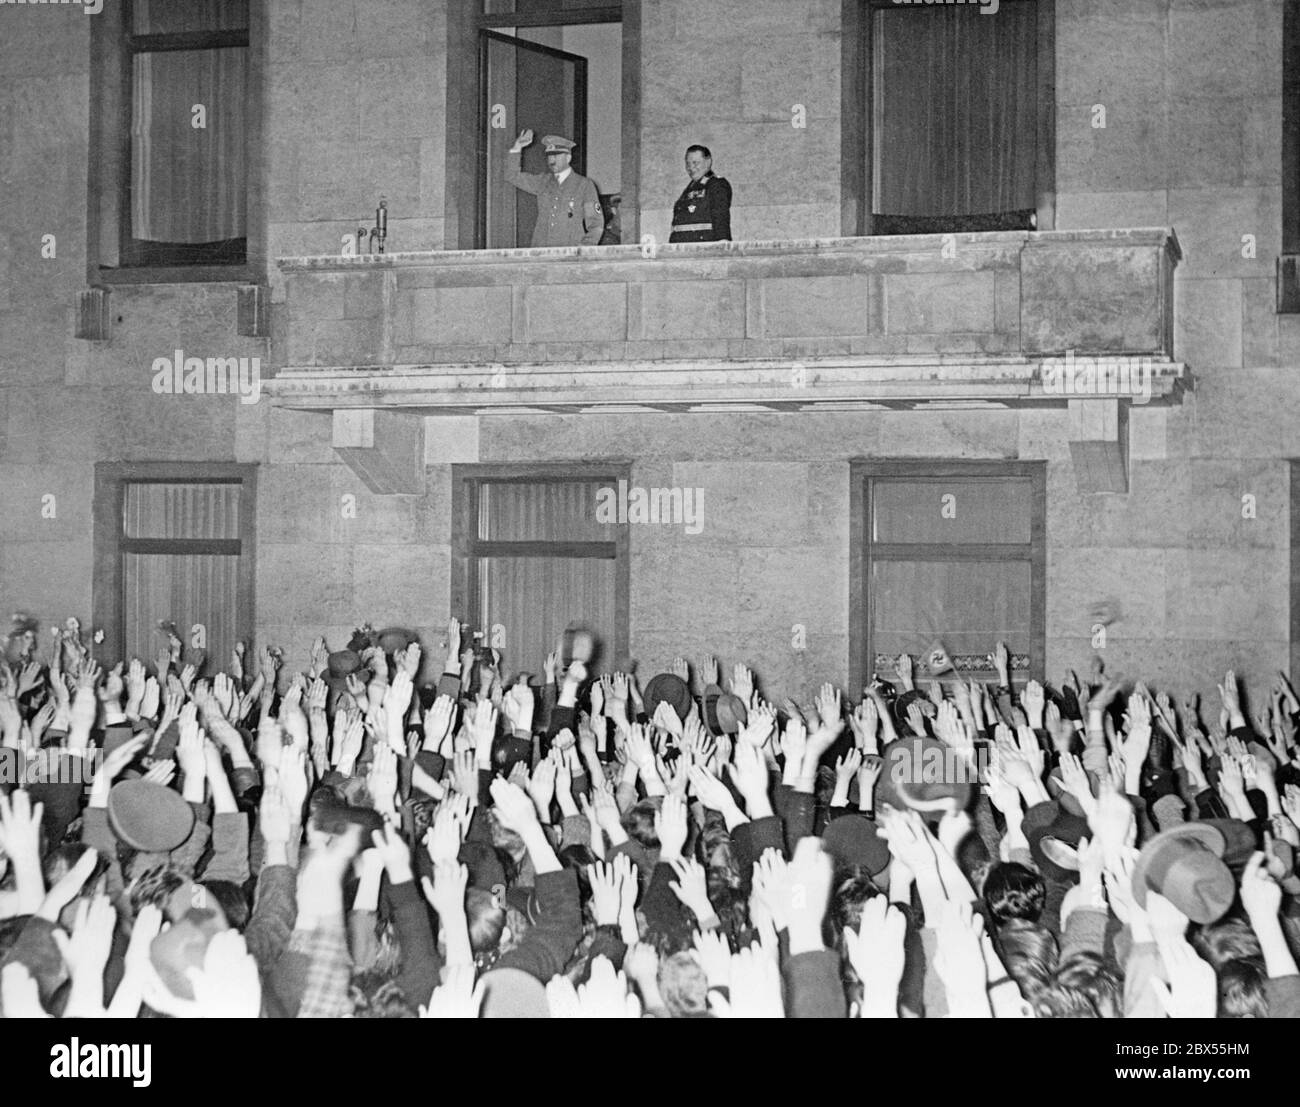 Adolf Hitler und Herman Göring auf dem Balkon der Reichskanzlei in Berlin. Nach der Annexion Österreichs an das Deutsche Reich kehrt Hitler nach Berlin zurück. Stockfoto